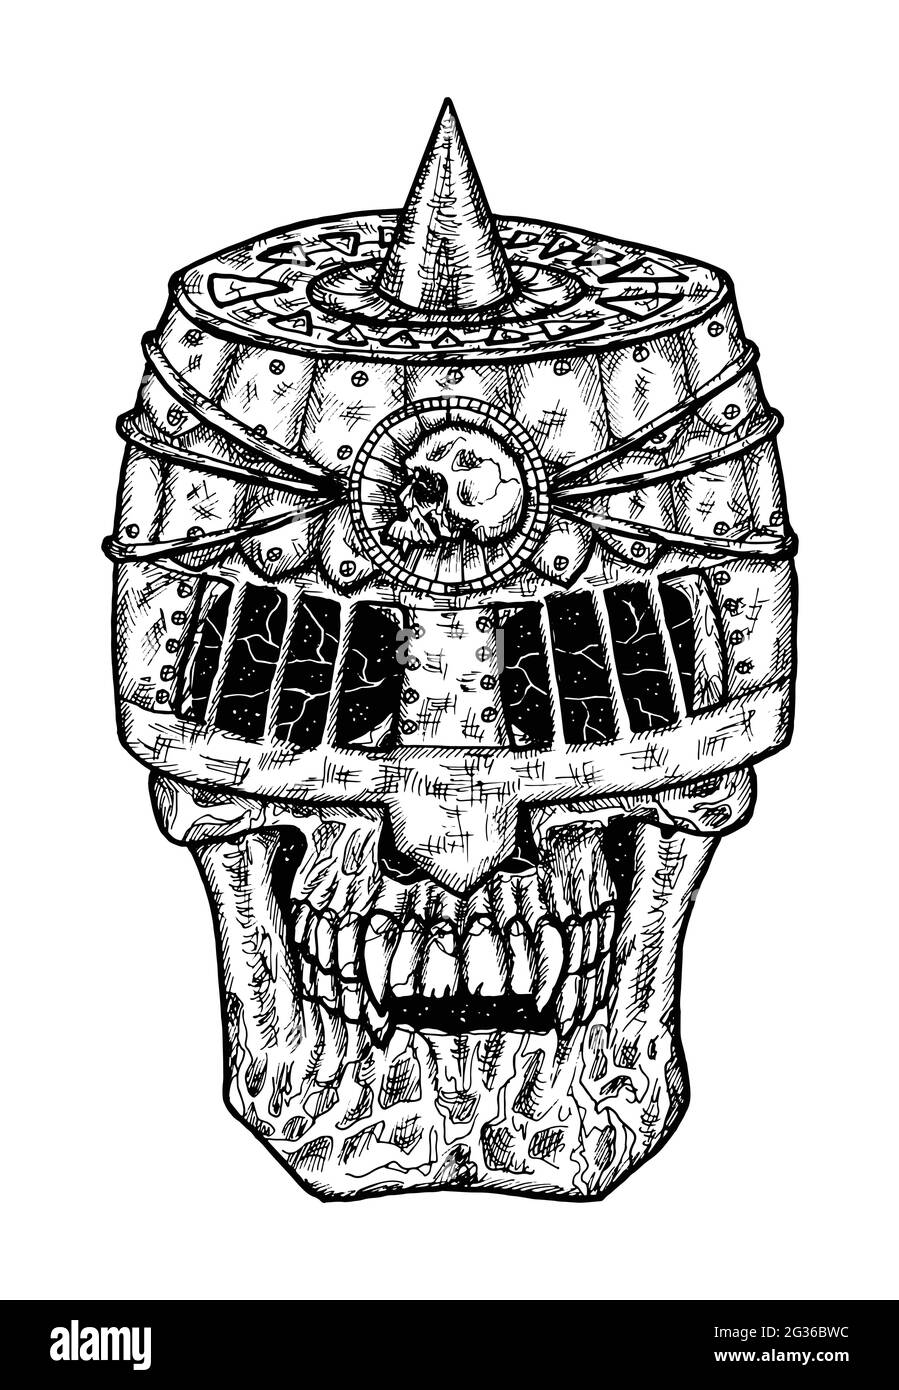 Schwarz-weiß gruselige Illustration eines Vektorschädels mit Ritter Helm. Mystische isolierte Zeichnung für Halloween mit esoterischem, gotischem, okkulten Konzept Stock Vektor